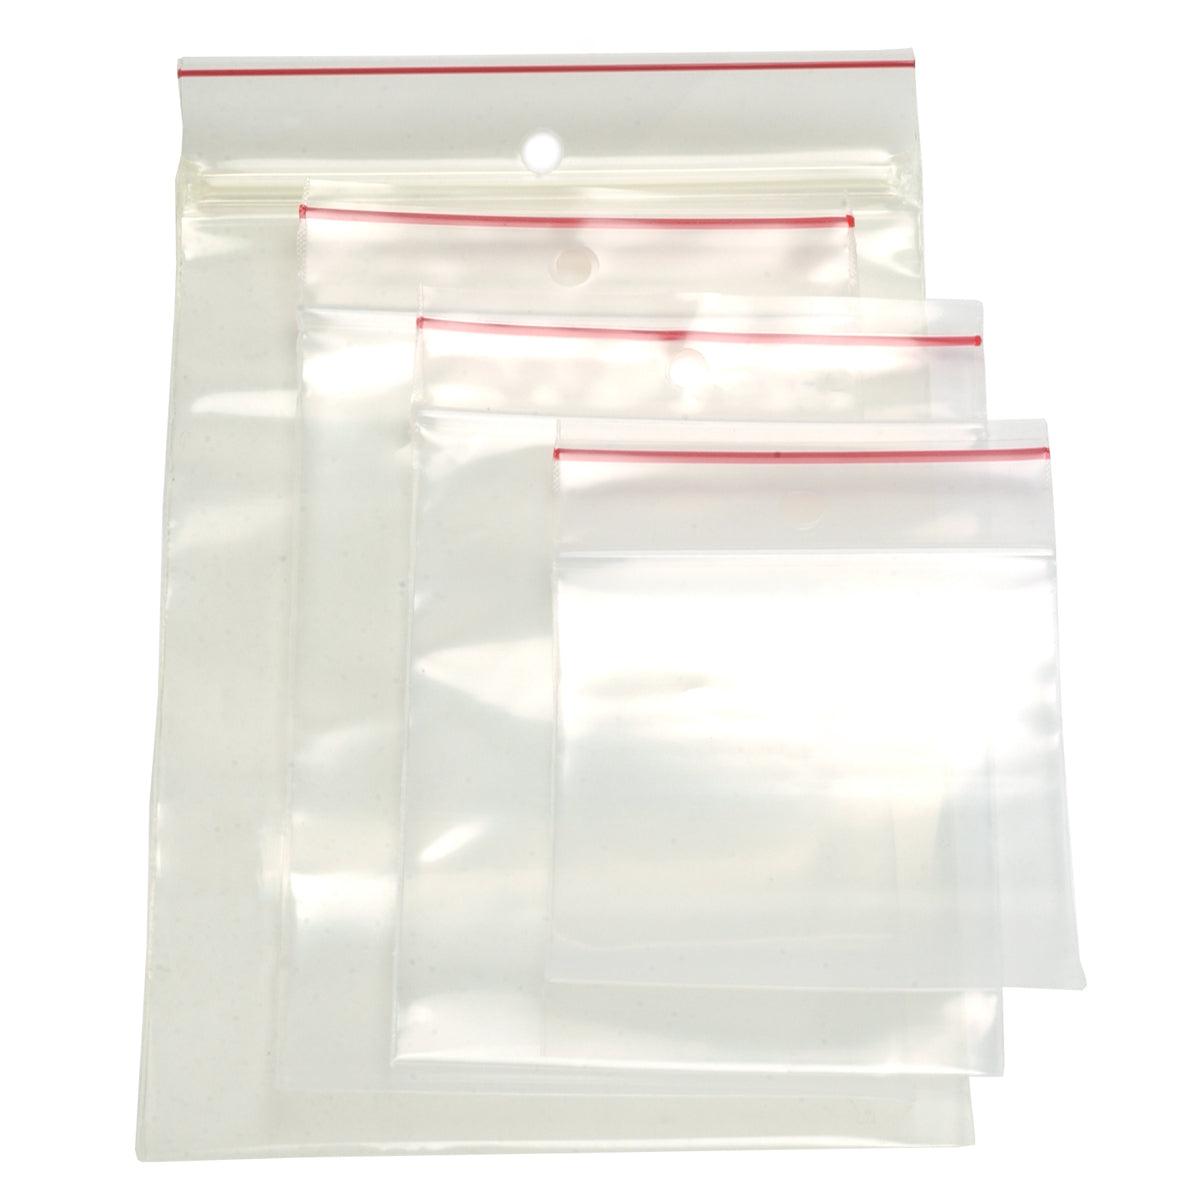 Minigrip Premium Red Line Reclosable Zipper Bags:Environmental  Samplers:General